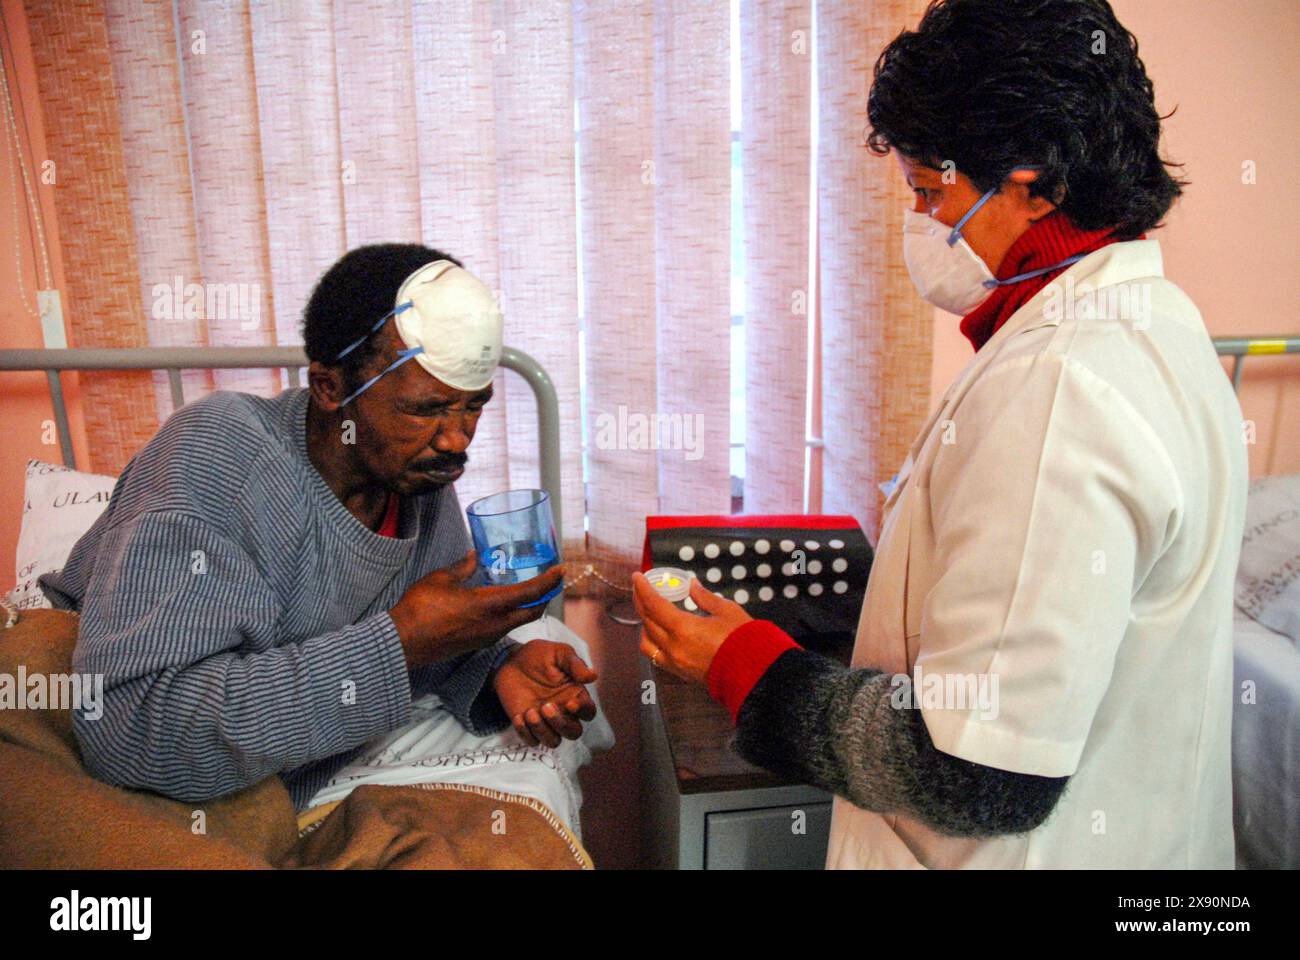 24. Juli 2007 - Südafrika Kapstadt; Brooklyn Chest Hospital TB Tuberkulose XDR Ärzte behandeln Patienten in einer speziellen Isolationsstation für arzneimittelresistente TB. Sie befinden sich in einem speziellen Programm, um neue Medikamente zu testen, die zur Behandlung der XDR-Version der Krankheit entwickelt wurden. Die Patienten werden in einer Station mit spezieller Beatmung, TV, Radio und hohem Verhältnis von Personal/Patient während des Programms Sputum ansteckende Masken Arzt Krankenschwester Pillen Medikamente Gesundheit Injektion stationär aufgenommen Foto: Eric Miller / african.Pictures Stockfoto